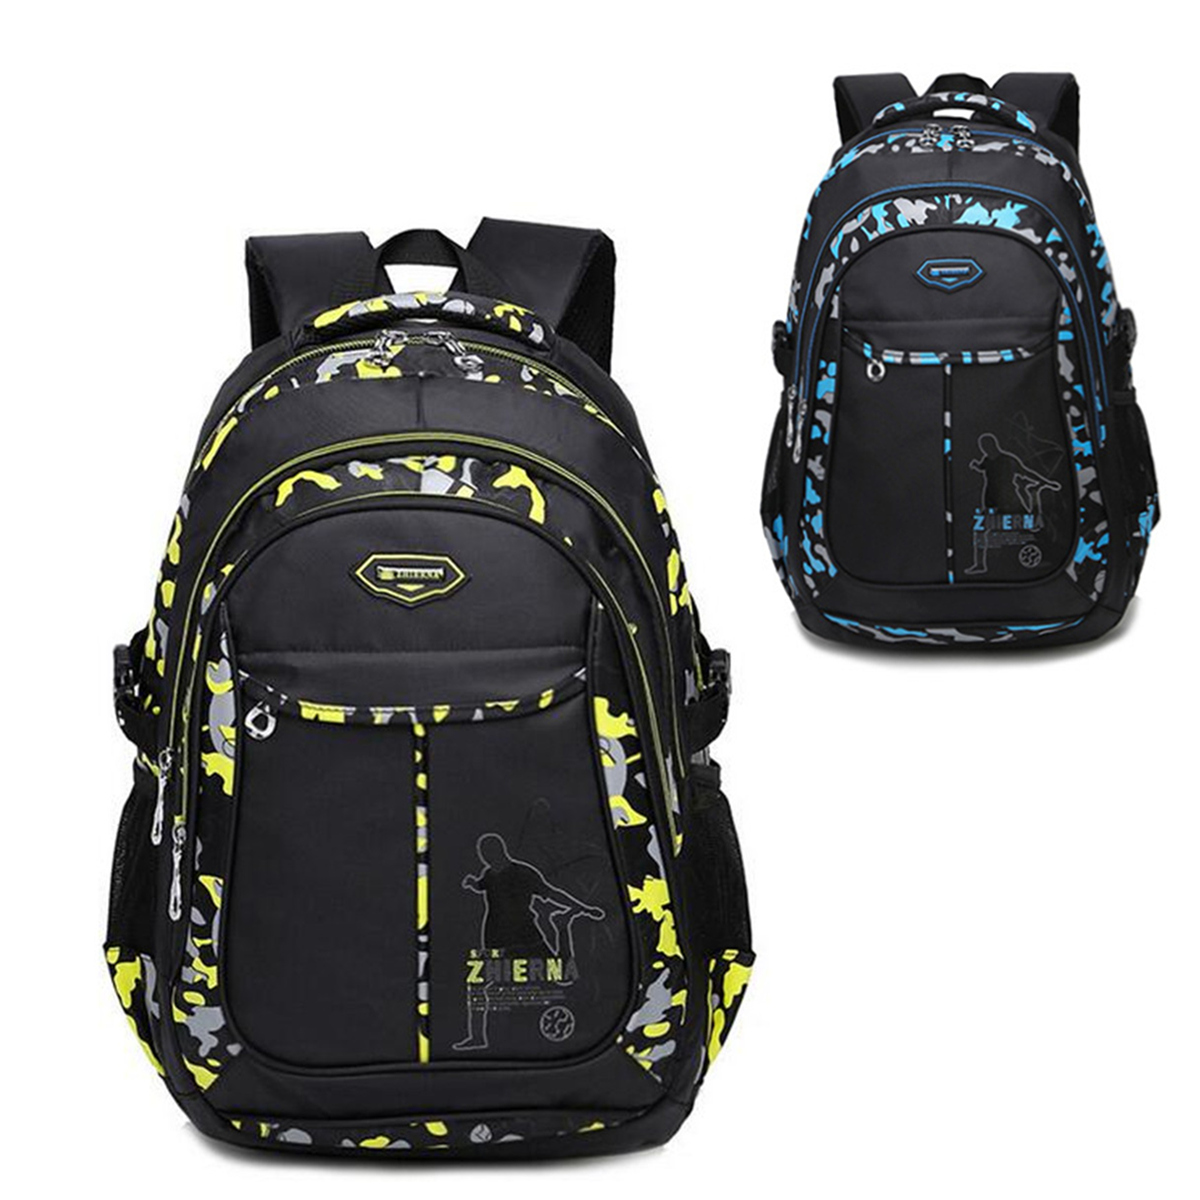 Men-Waterproof-Big-Capacity-Travel-Outdoor-Laptop-Shoulders-Bag-School-Backpack-1188252-5